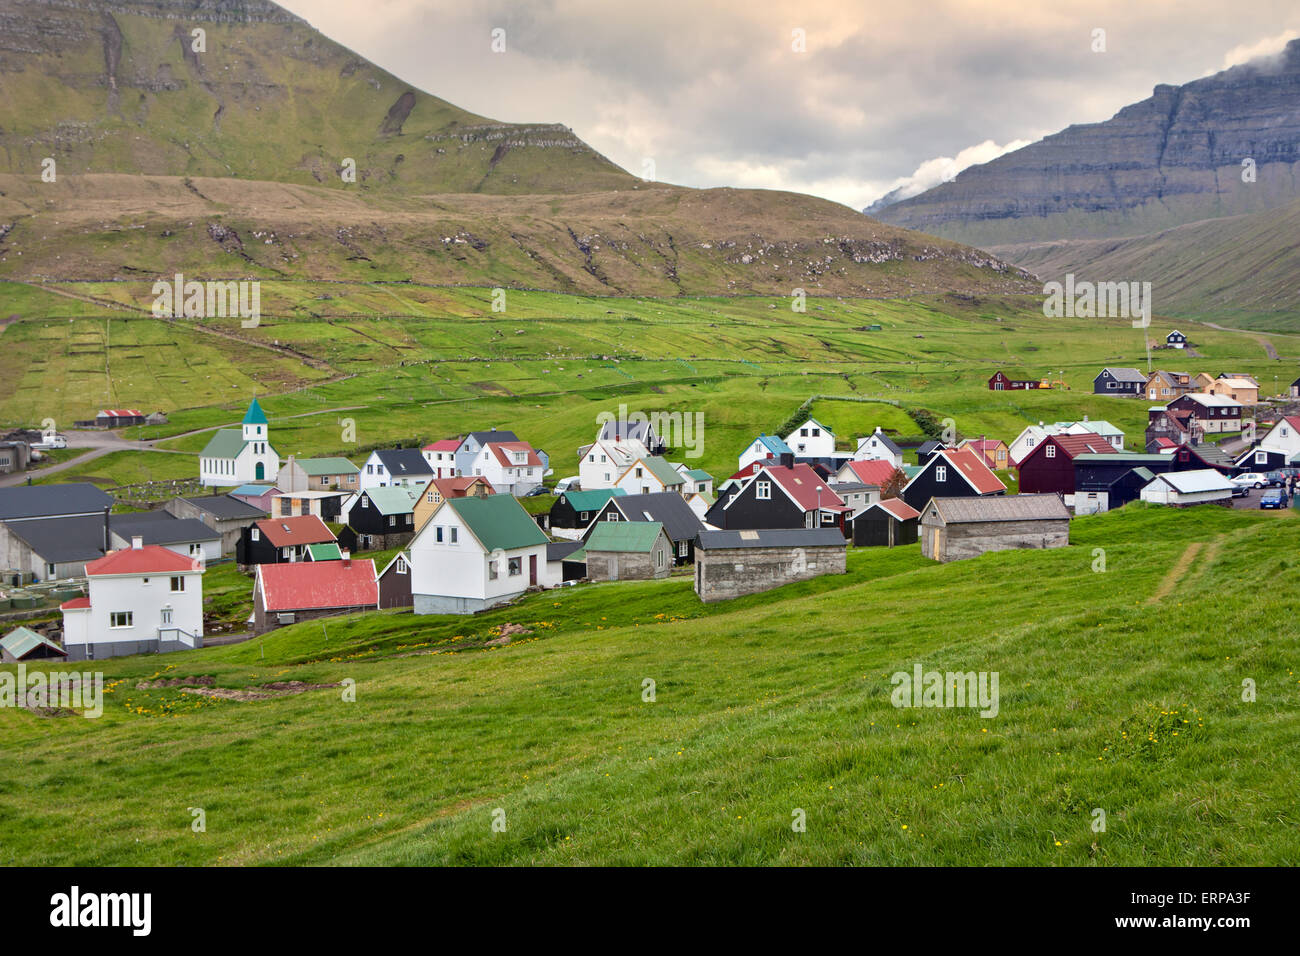 Gjogv, Färöer Inseln: abgelegenes Dorf in einem grünen Tal Stockfoto